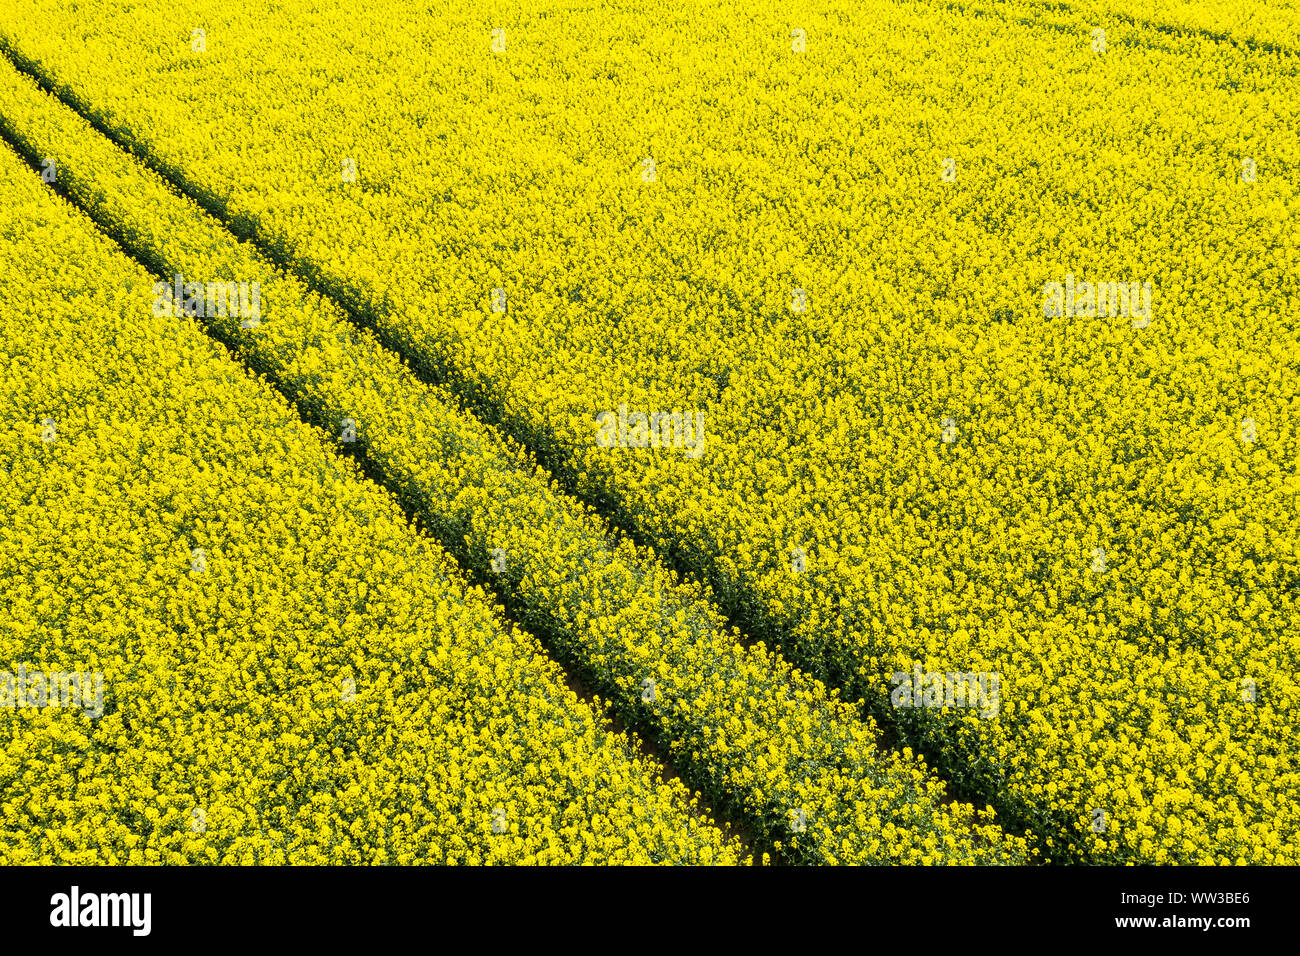 Raps Feld von oben gesehen - gelbe Blumen Stockfoto